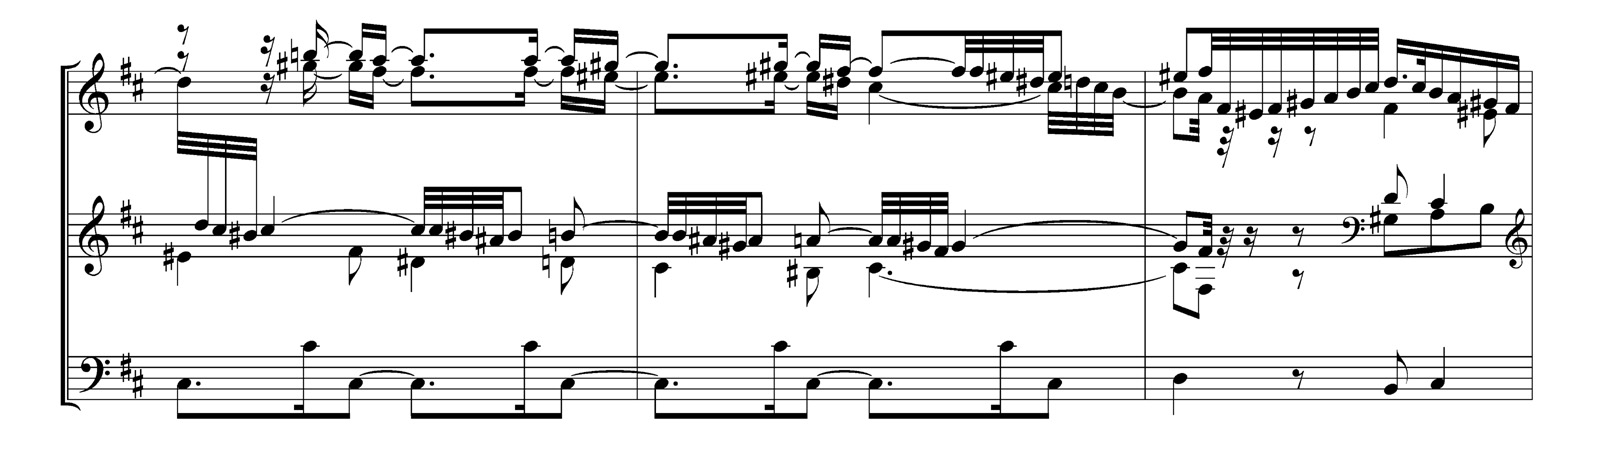 Exemple de gravure moderne (utilisant Finale et Maestro), avec un bon paramétrage (épaisseur des lignes, ligatures, espacement des notes).